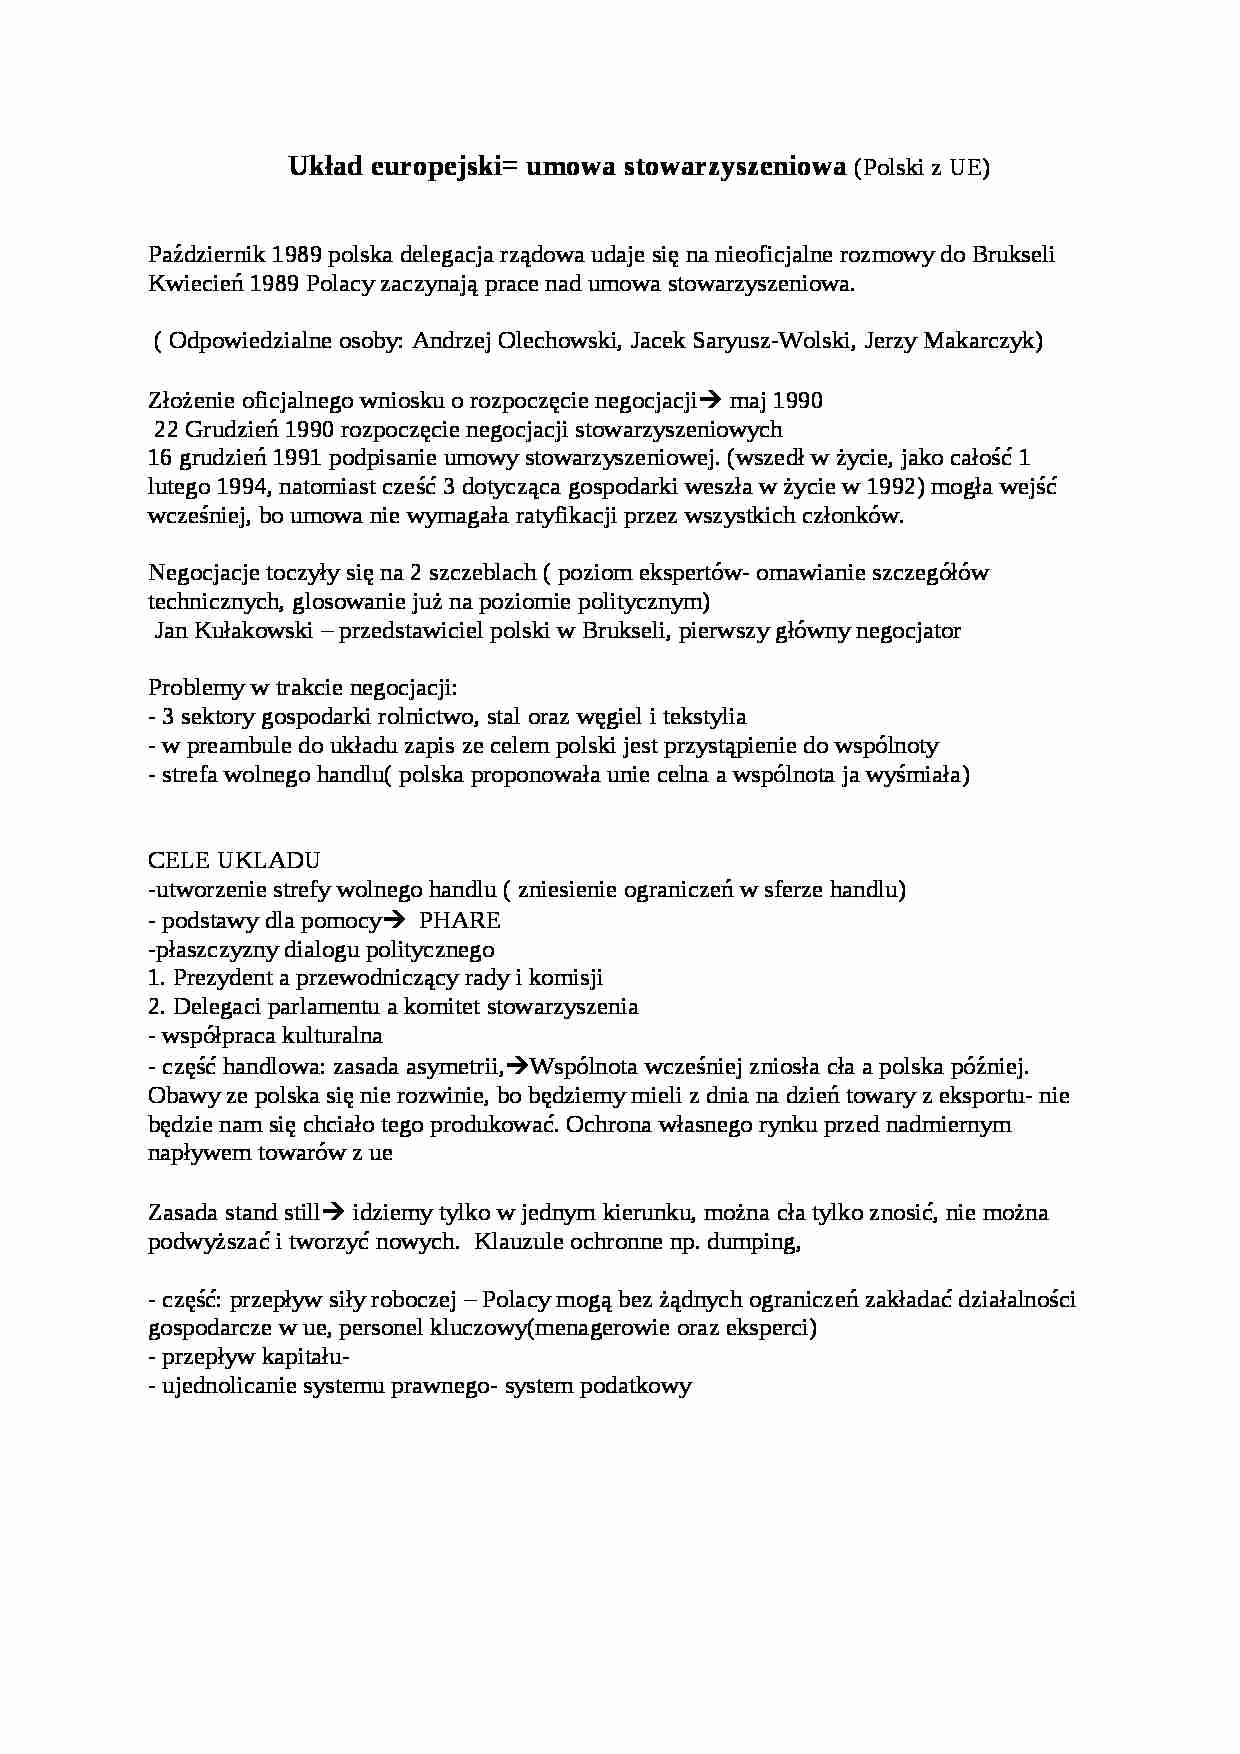  Polska w Procesie Integracji  - Układ europejski - umowa stowarzyszeniowa - strona 1